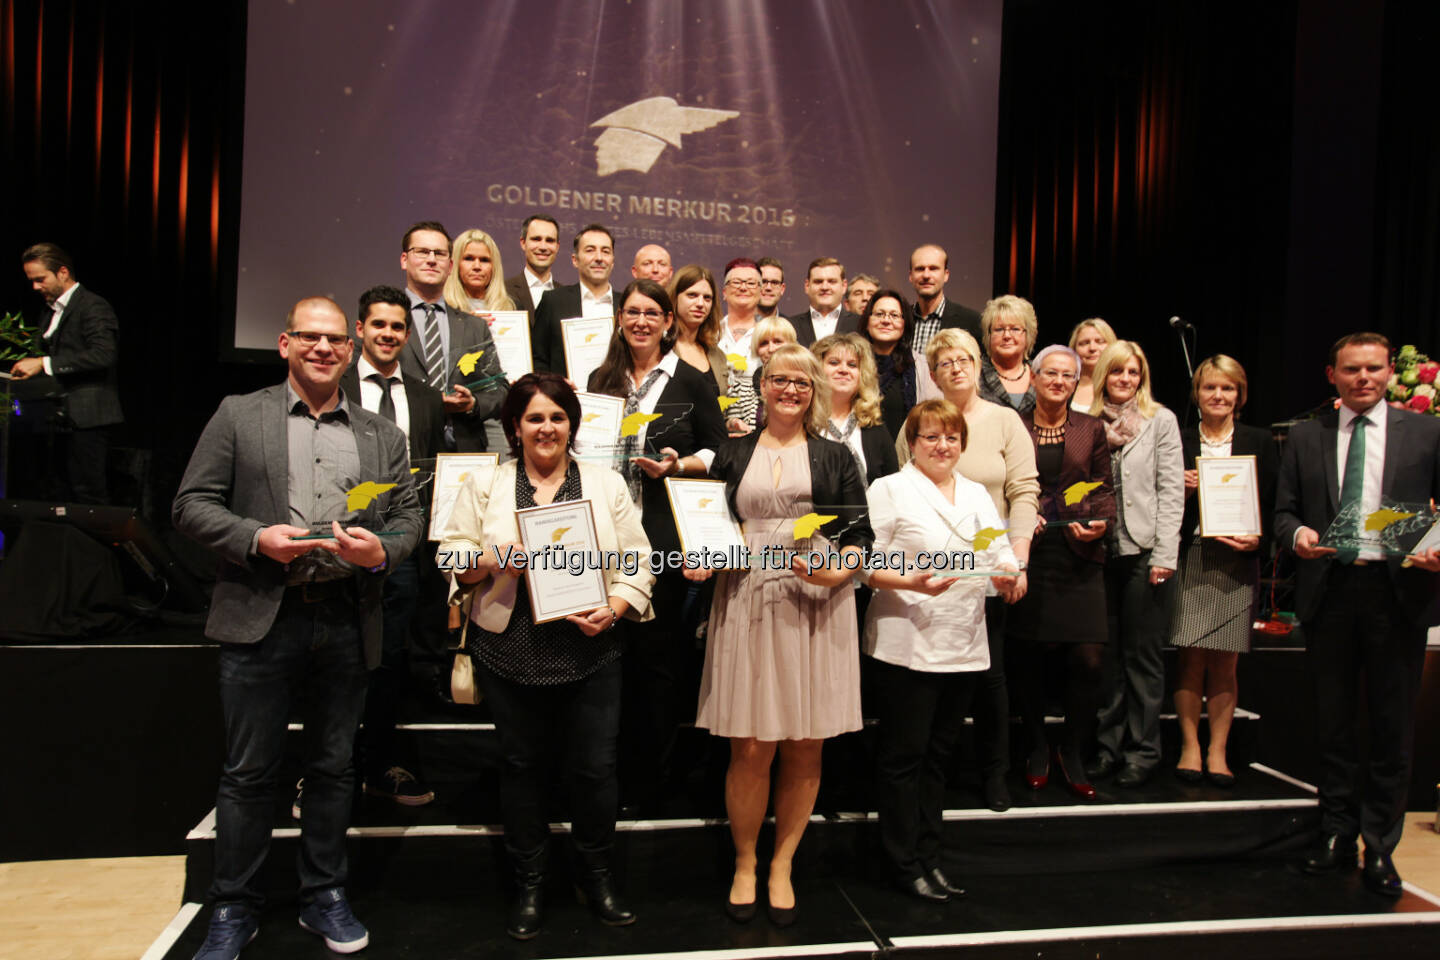 Sieger des Goldenen Merkur 2016 : Goldener Merkur für die besten Lebensmittelgeschäfte : Fotocredit: Handelszeitung/ Herwig Peuker